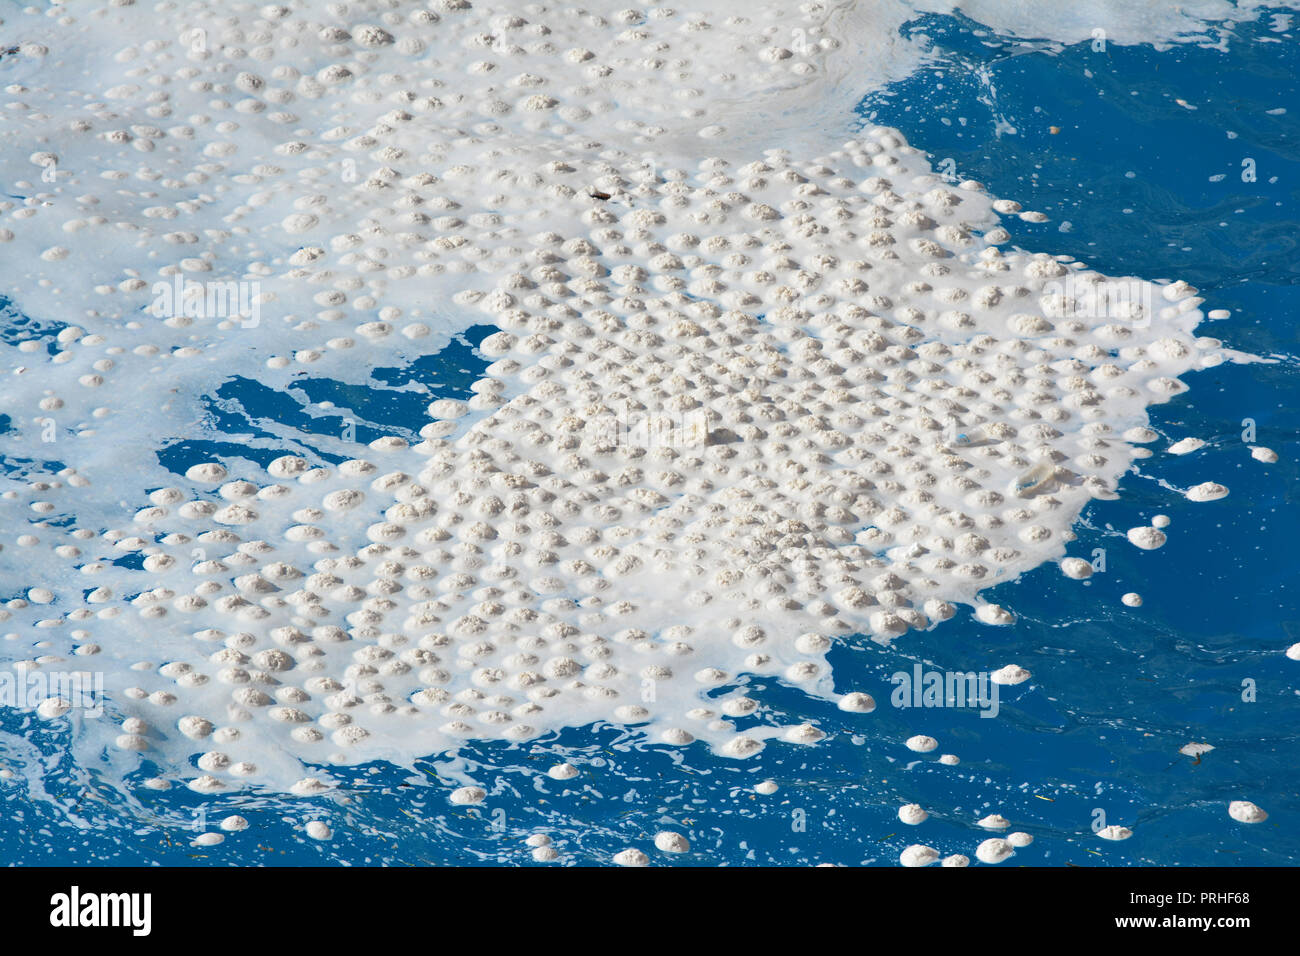 Mar snots o Marina Mycilage o Marina nieve sobre la superficie del mar Jónico, Vista cercana Foto de stock